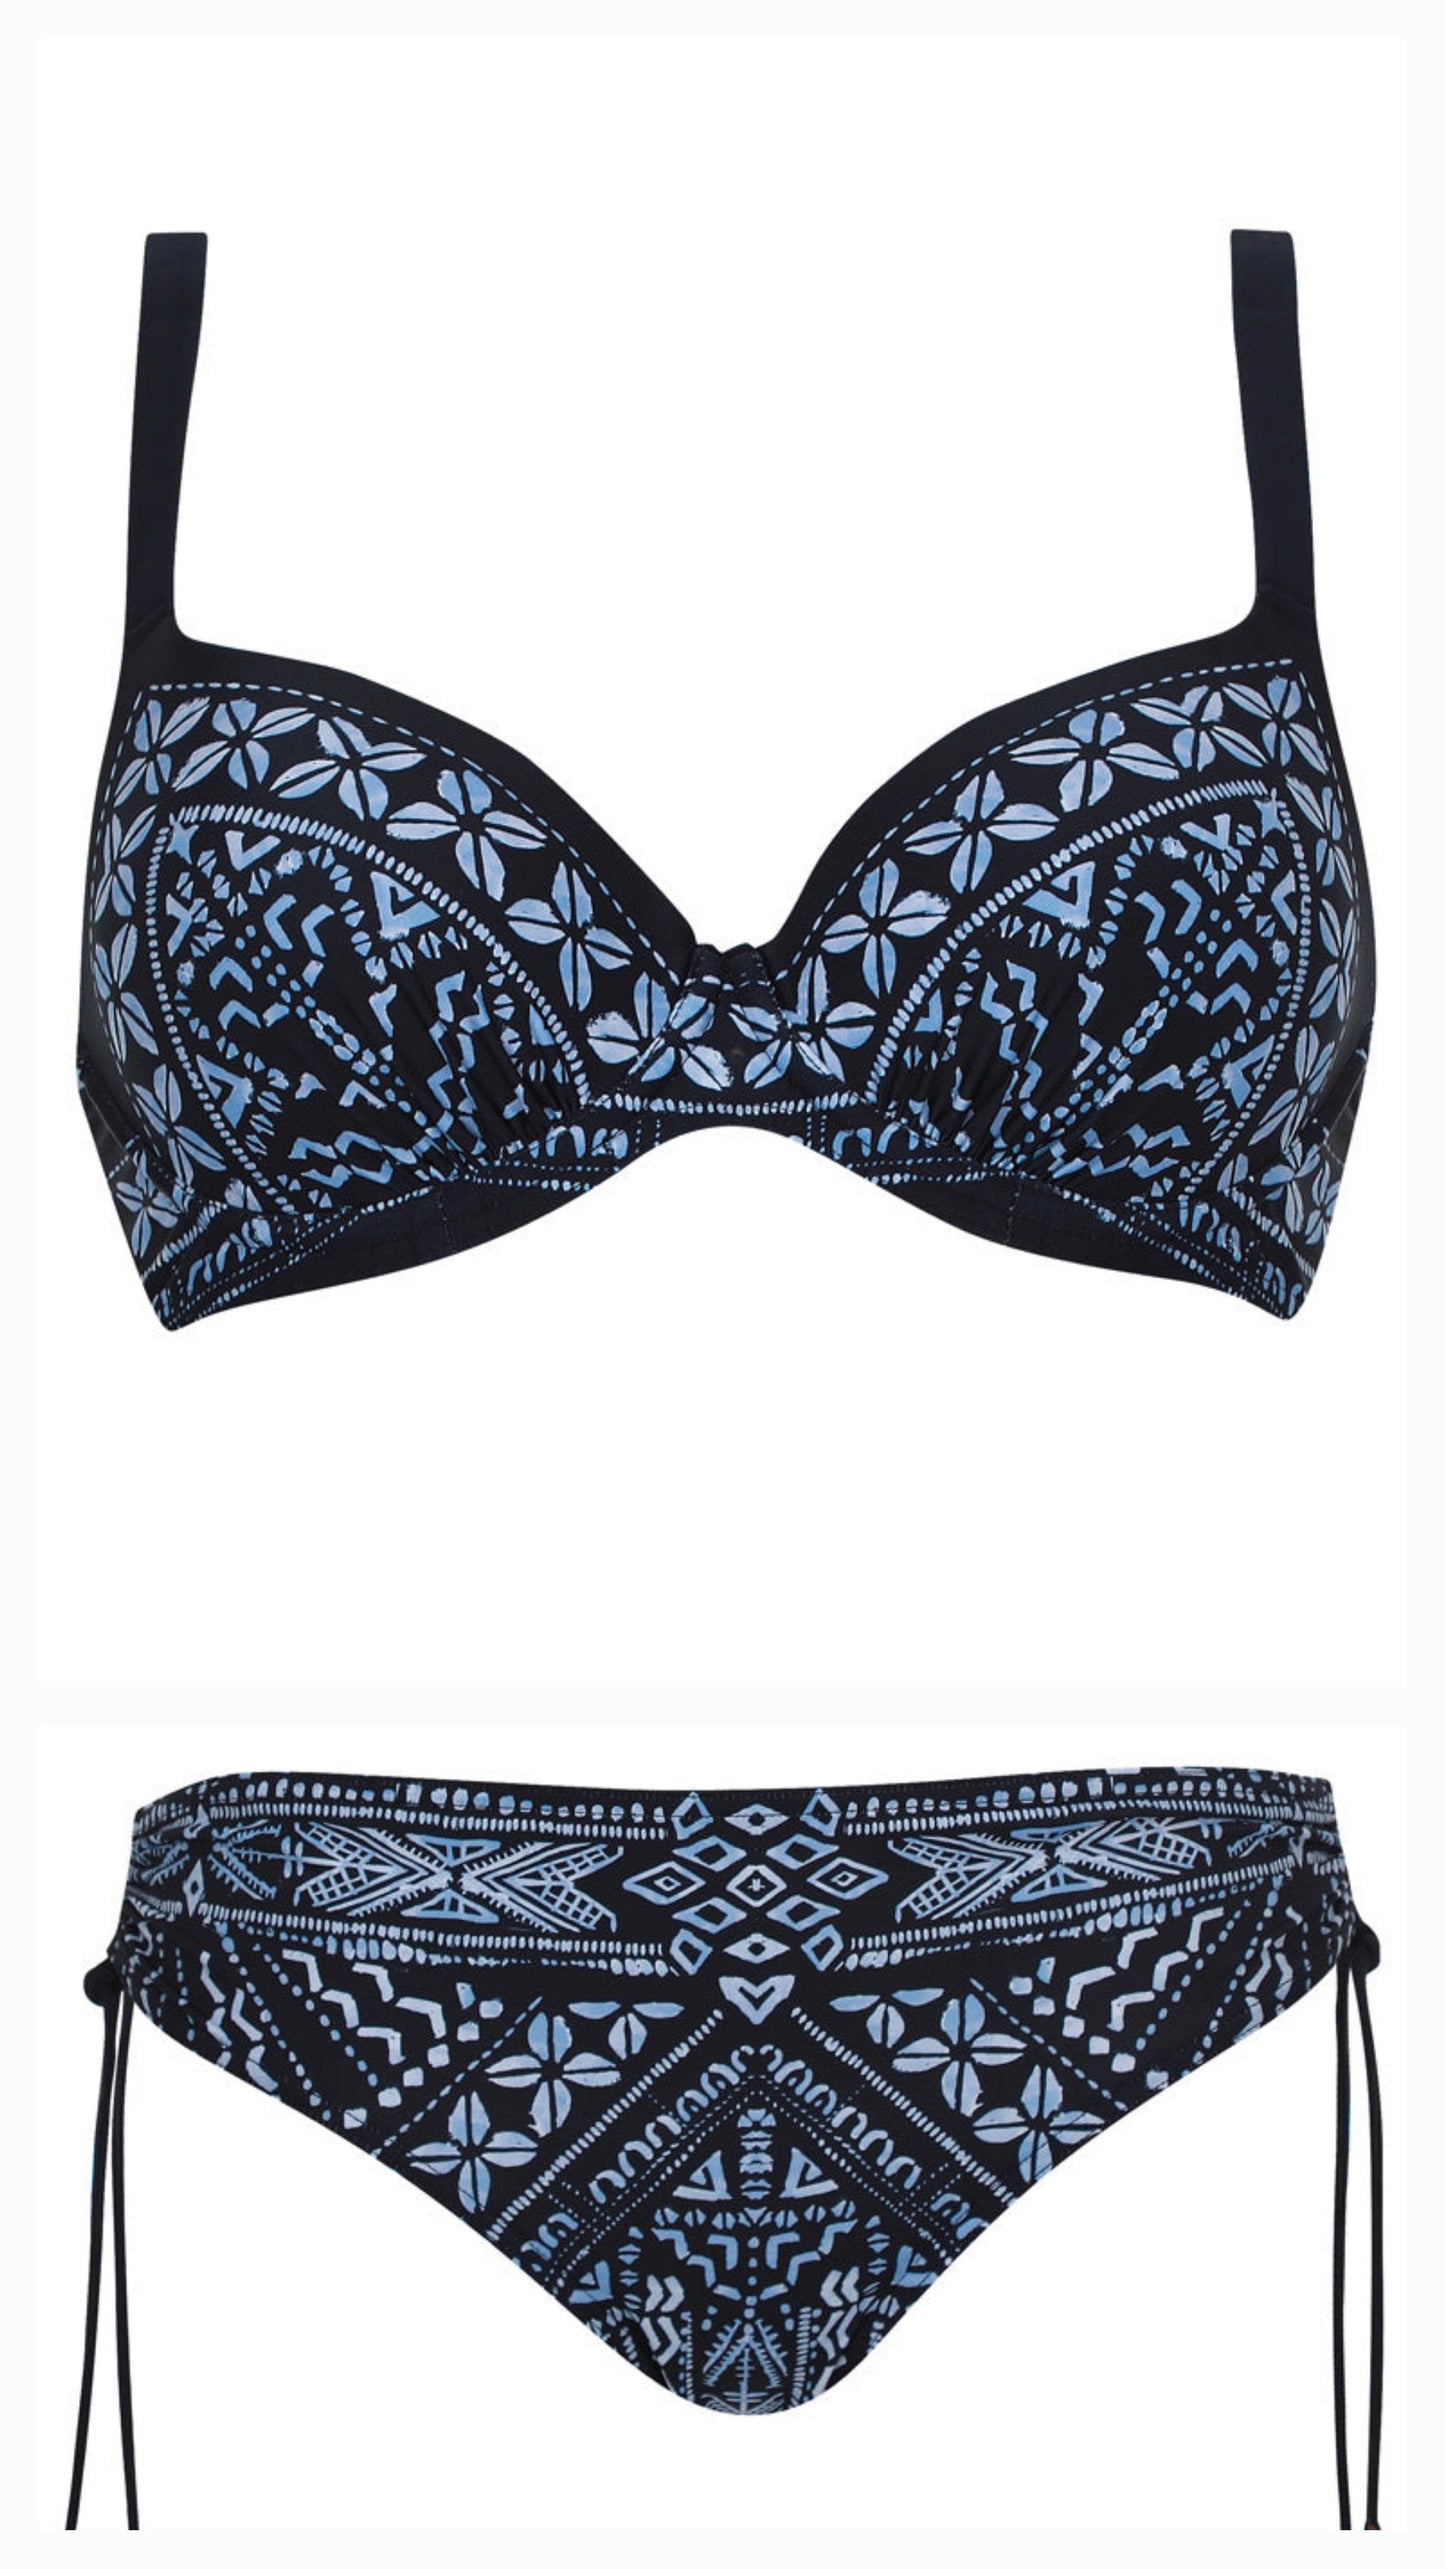 Olympia voorgevormde Bikini met beugel - 31667 en 31668 - nachtblauw